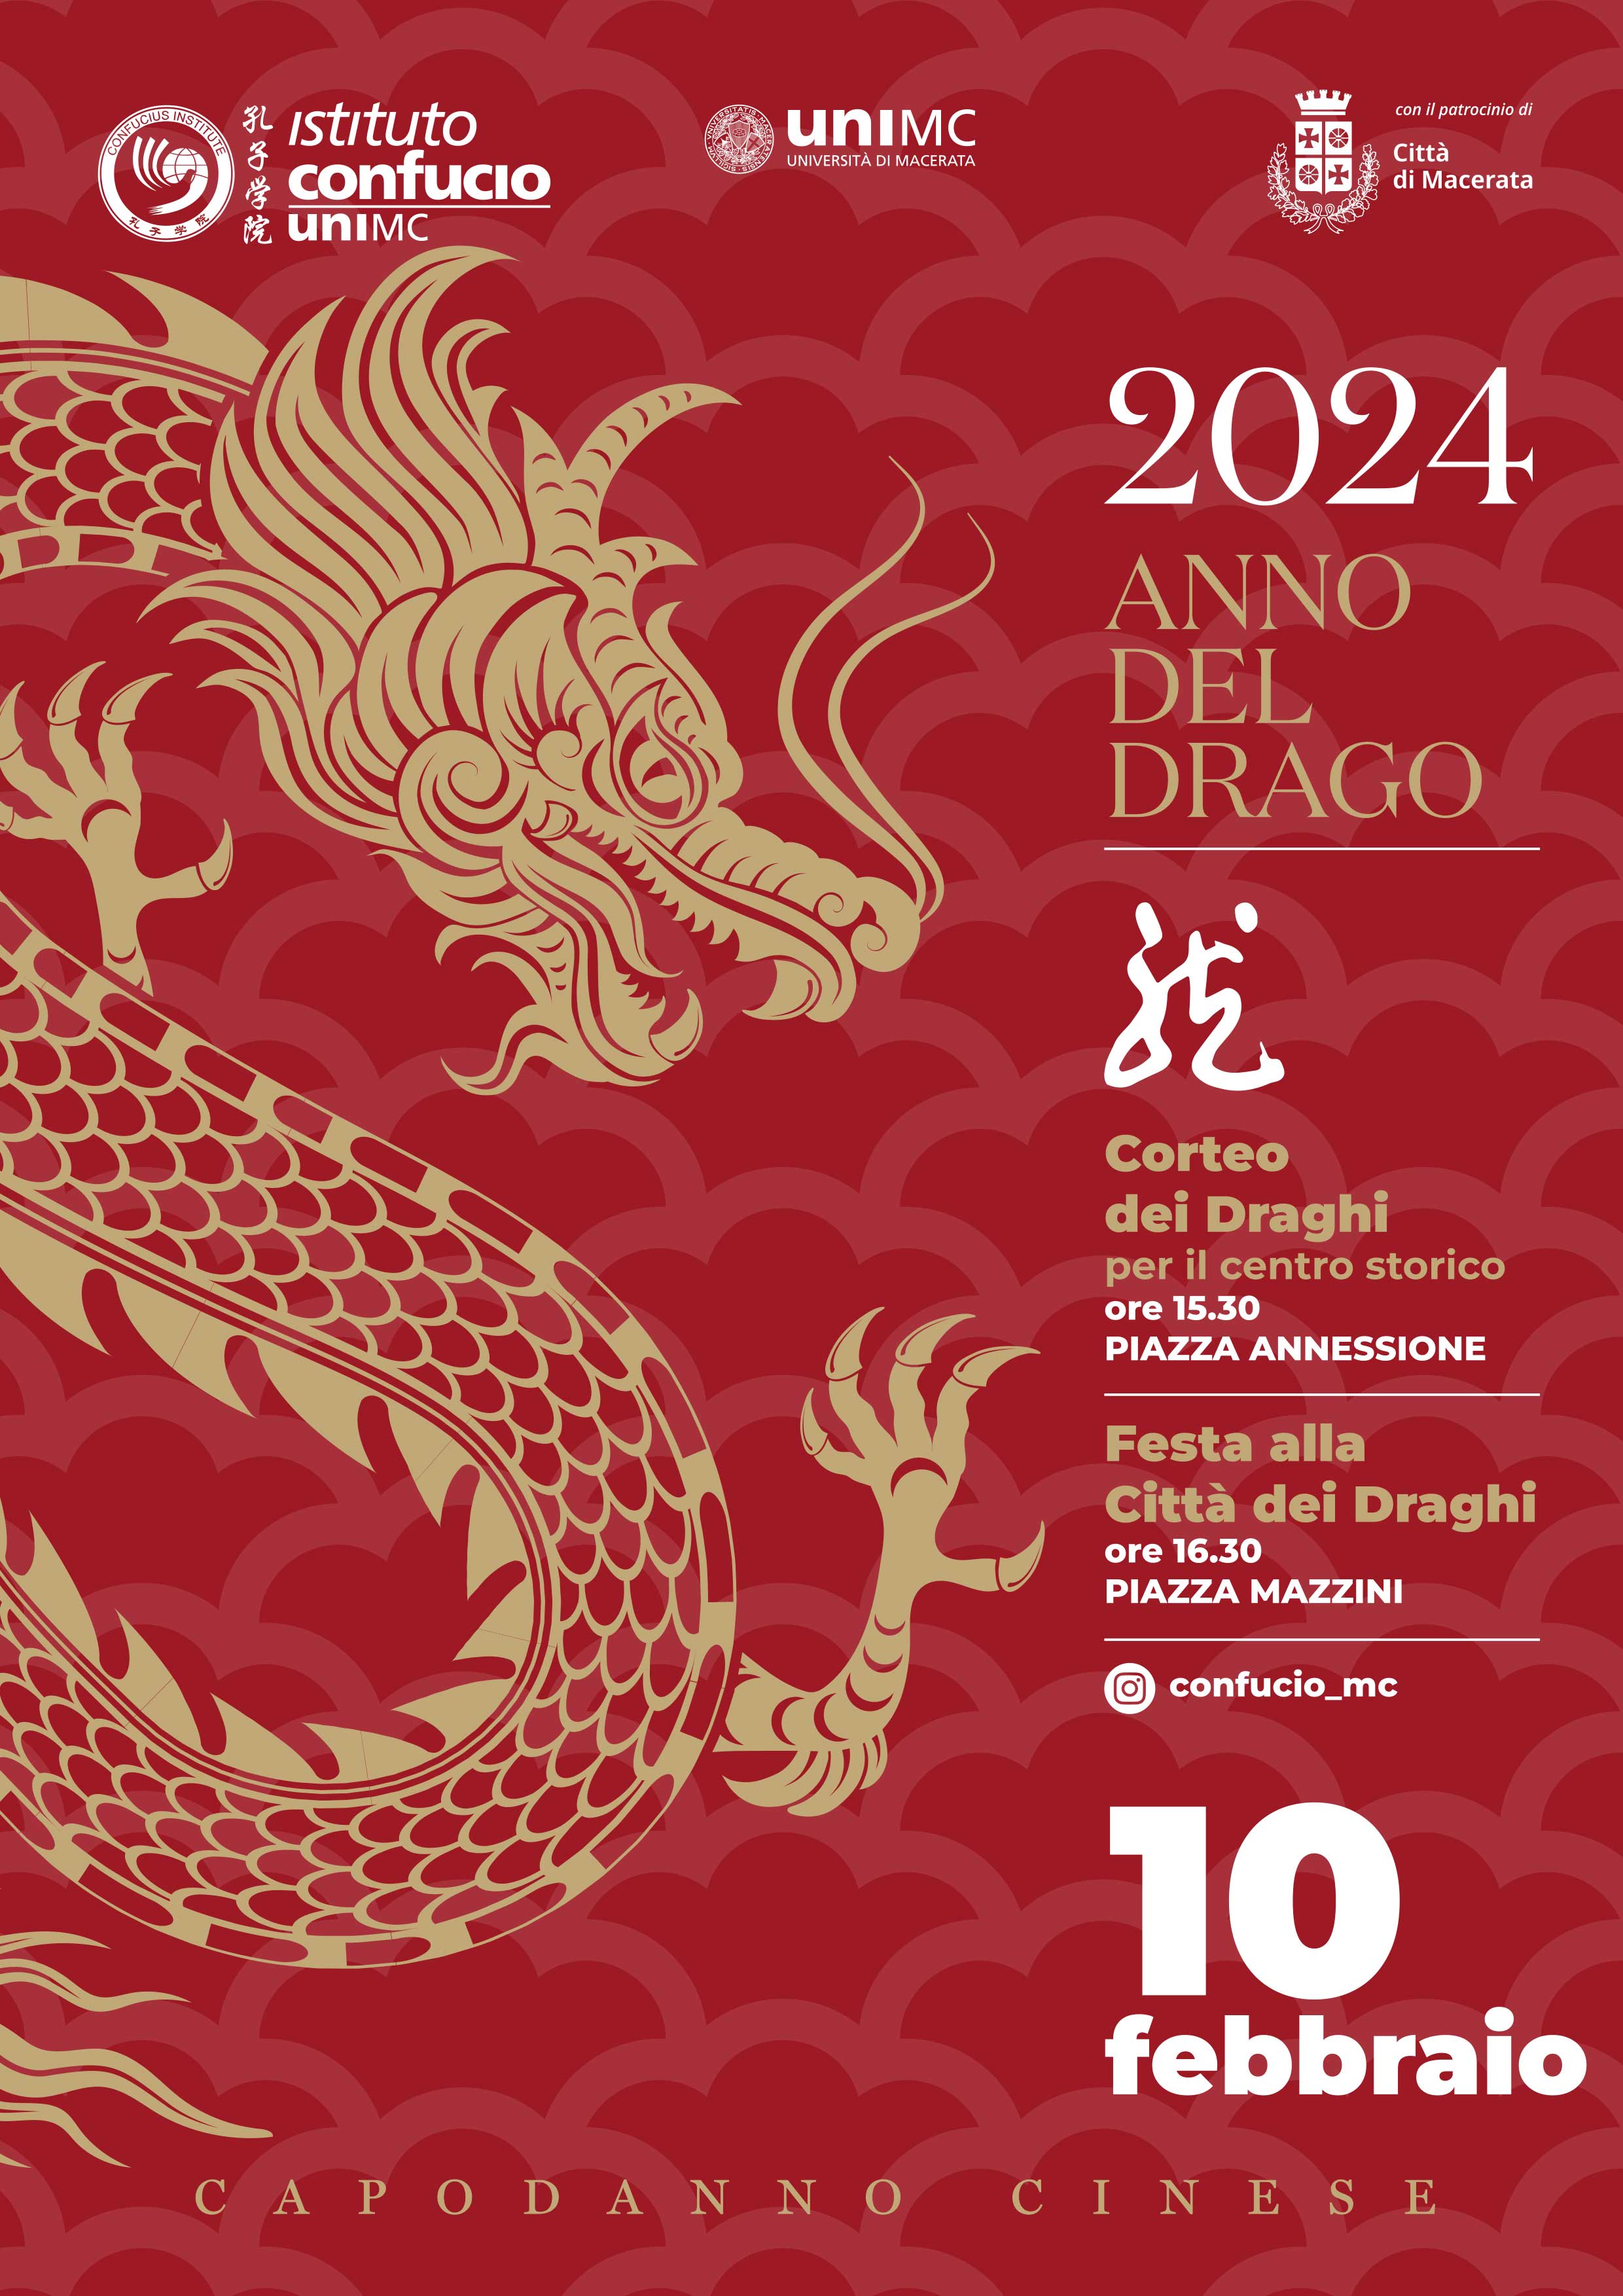 Università di Macerata: Capodanno cinese 2024. Anno del Drago